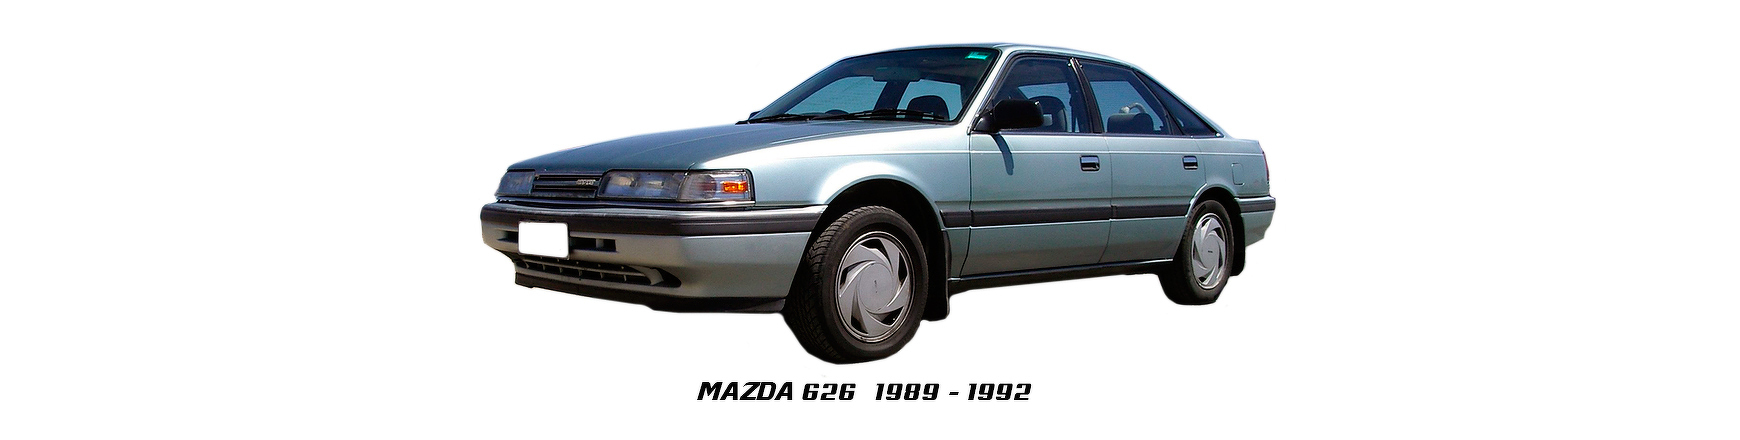 Piezas y Recambios de Mazda 626 de 1989 a 1992 | Visite Veramauto.es